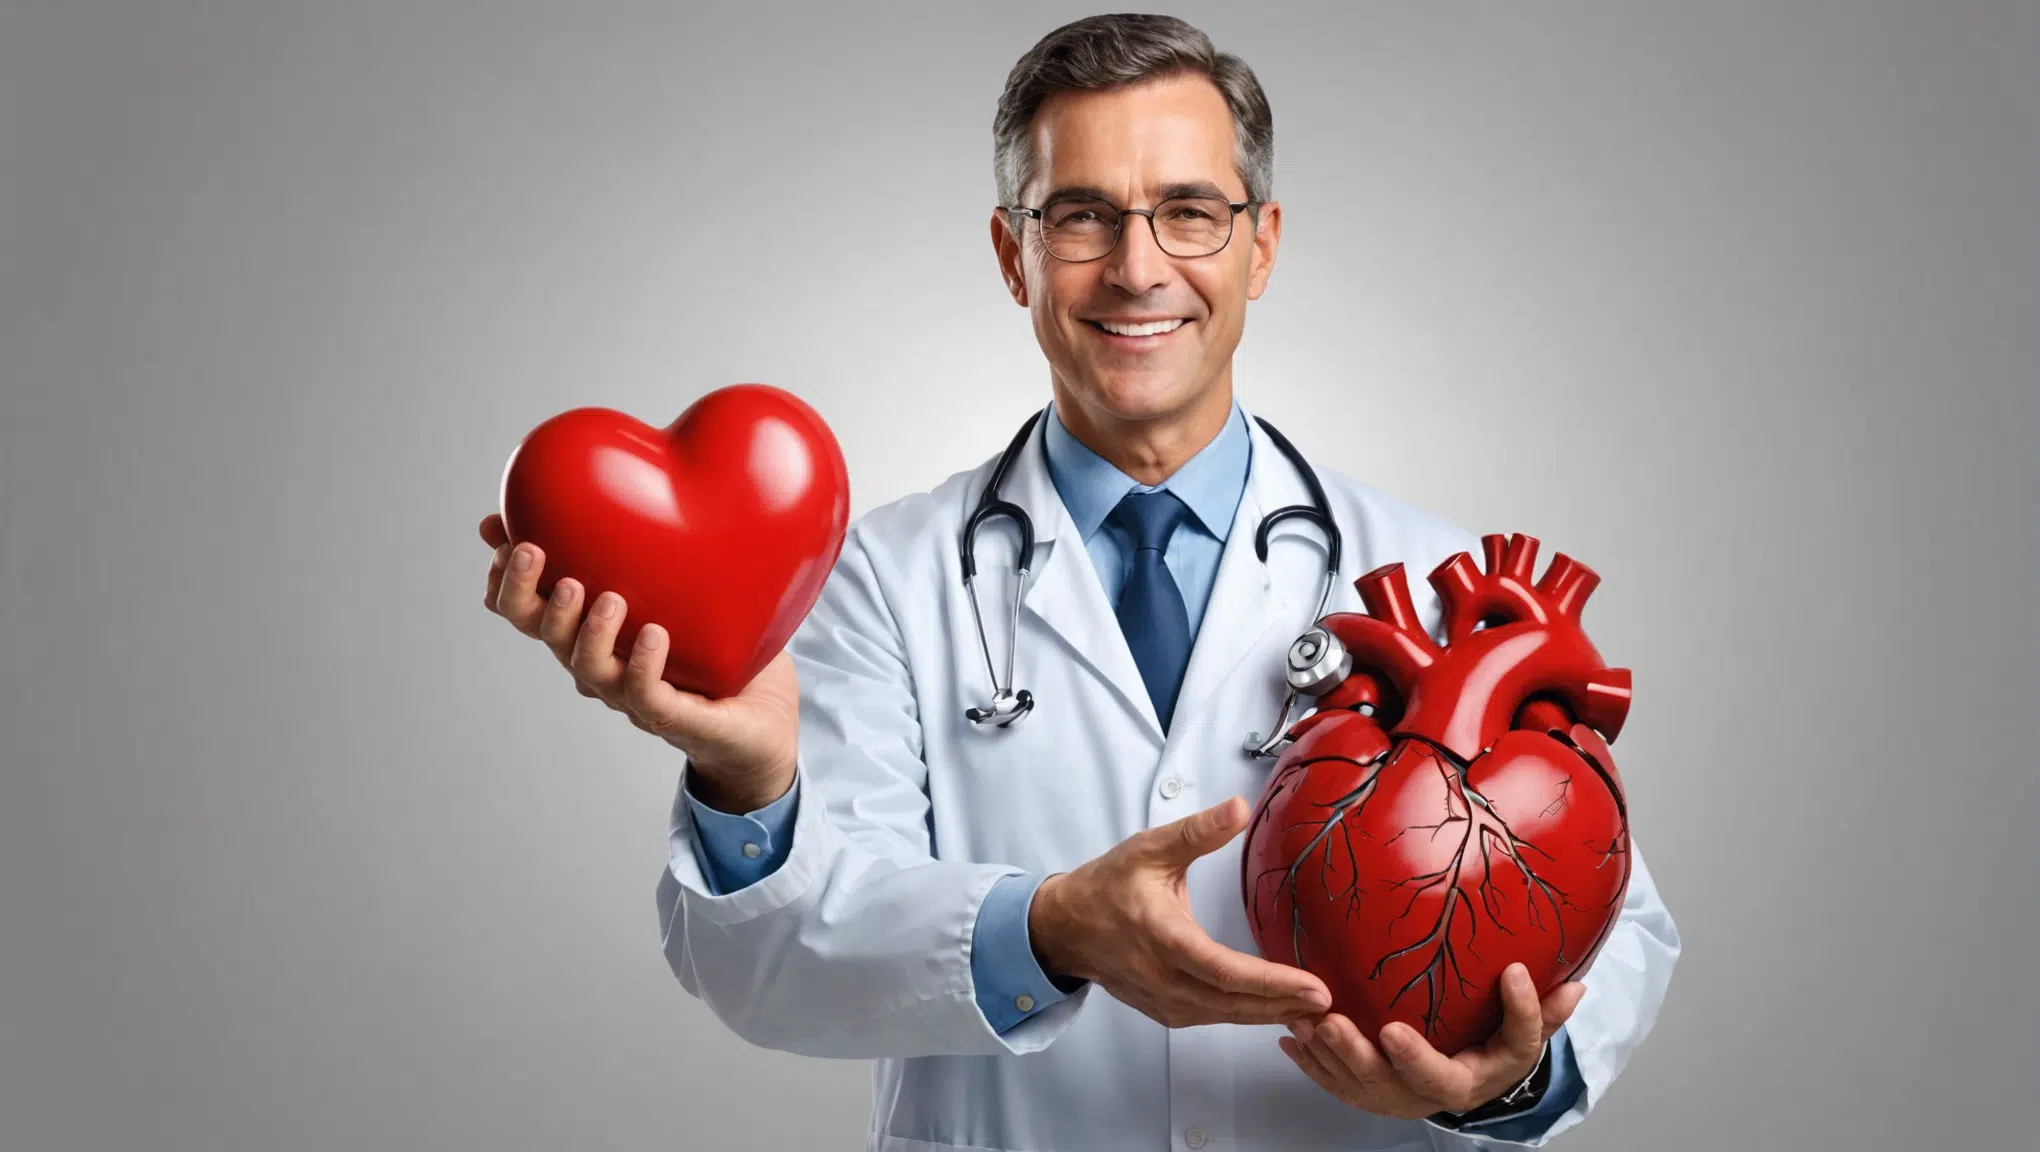 découvrez des conseils pratiques pour prendre soin de votre santé cardiaque au quotidien et prévenir les maladies cardiovasculaires.